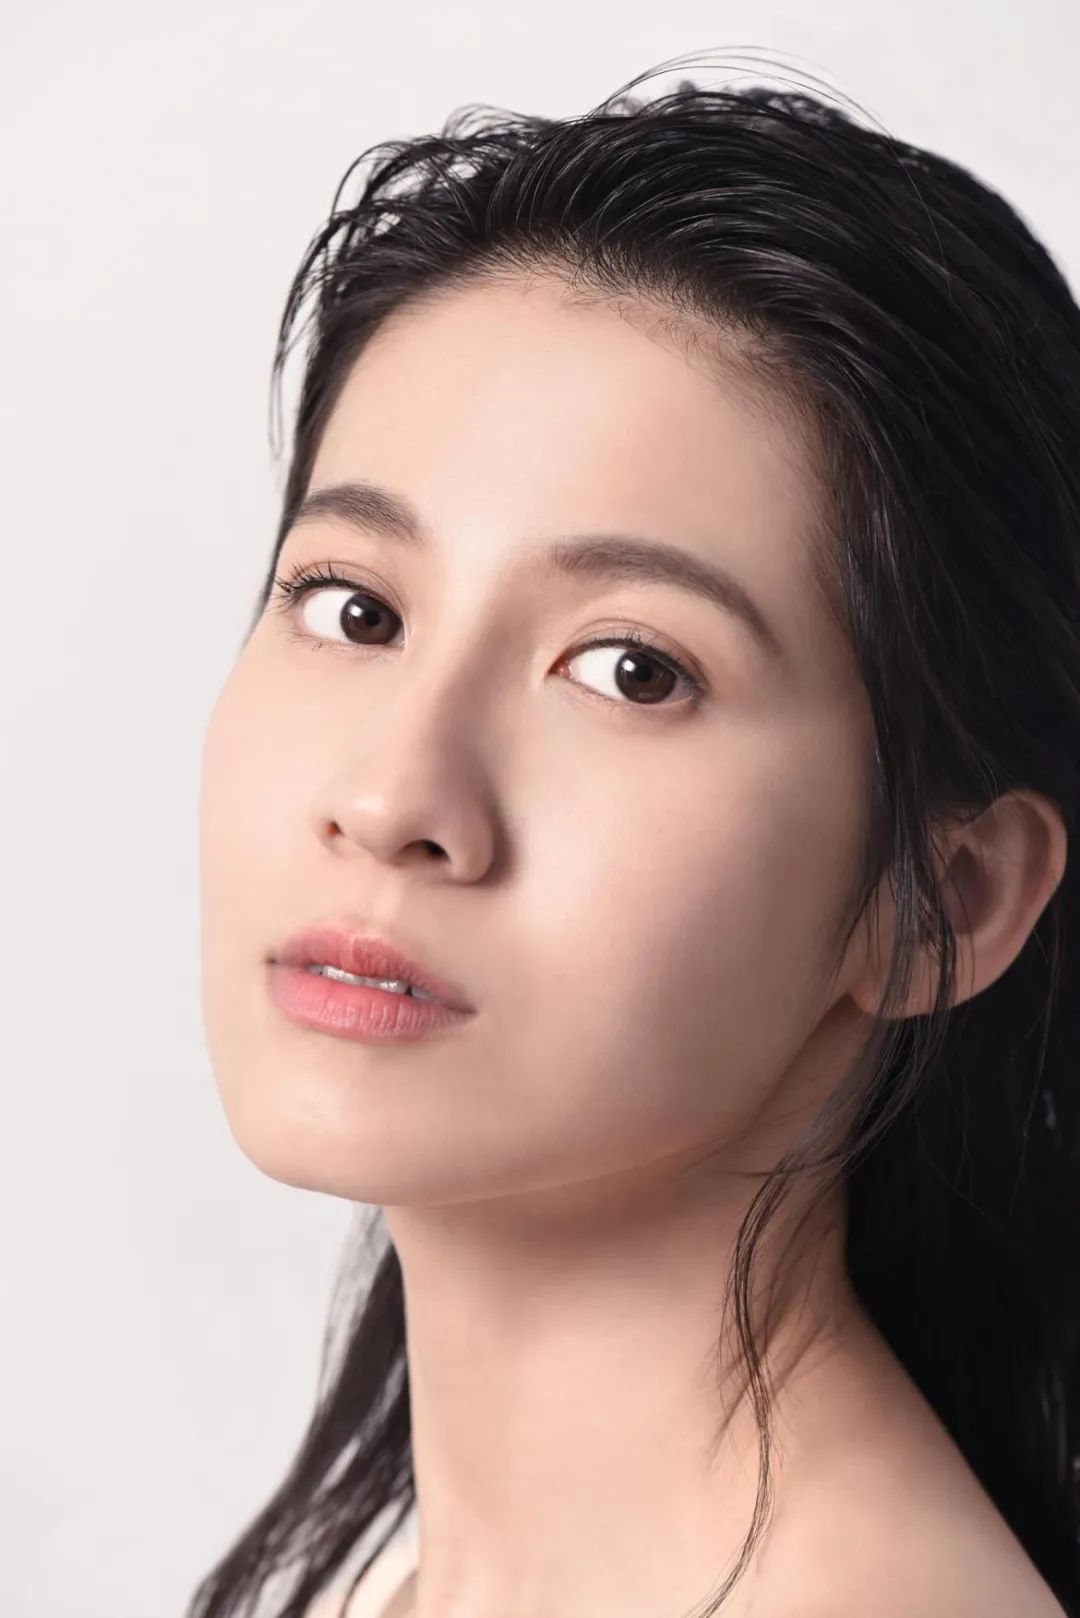 台湾女演员陈妍希甜美粉色长裙优雅写真 - 壁纸 - 亿图全景图库